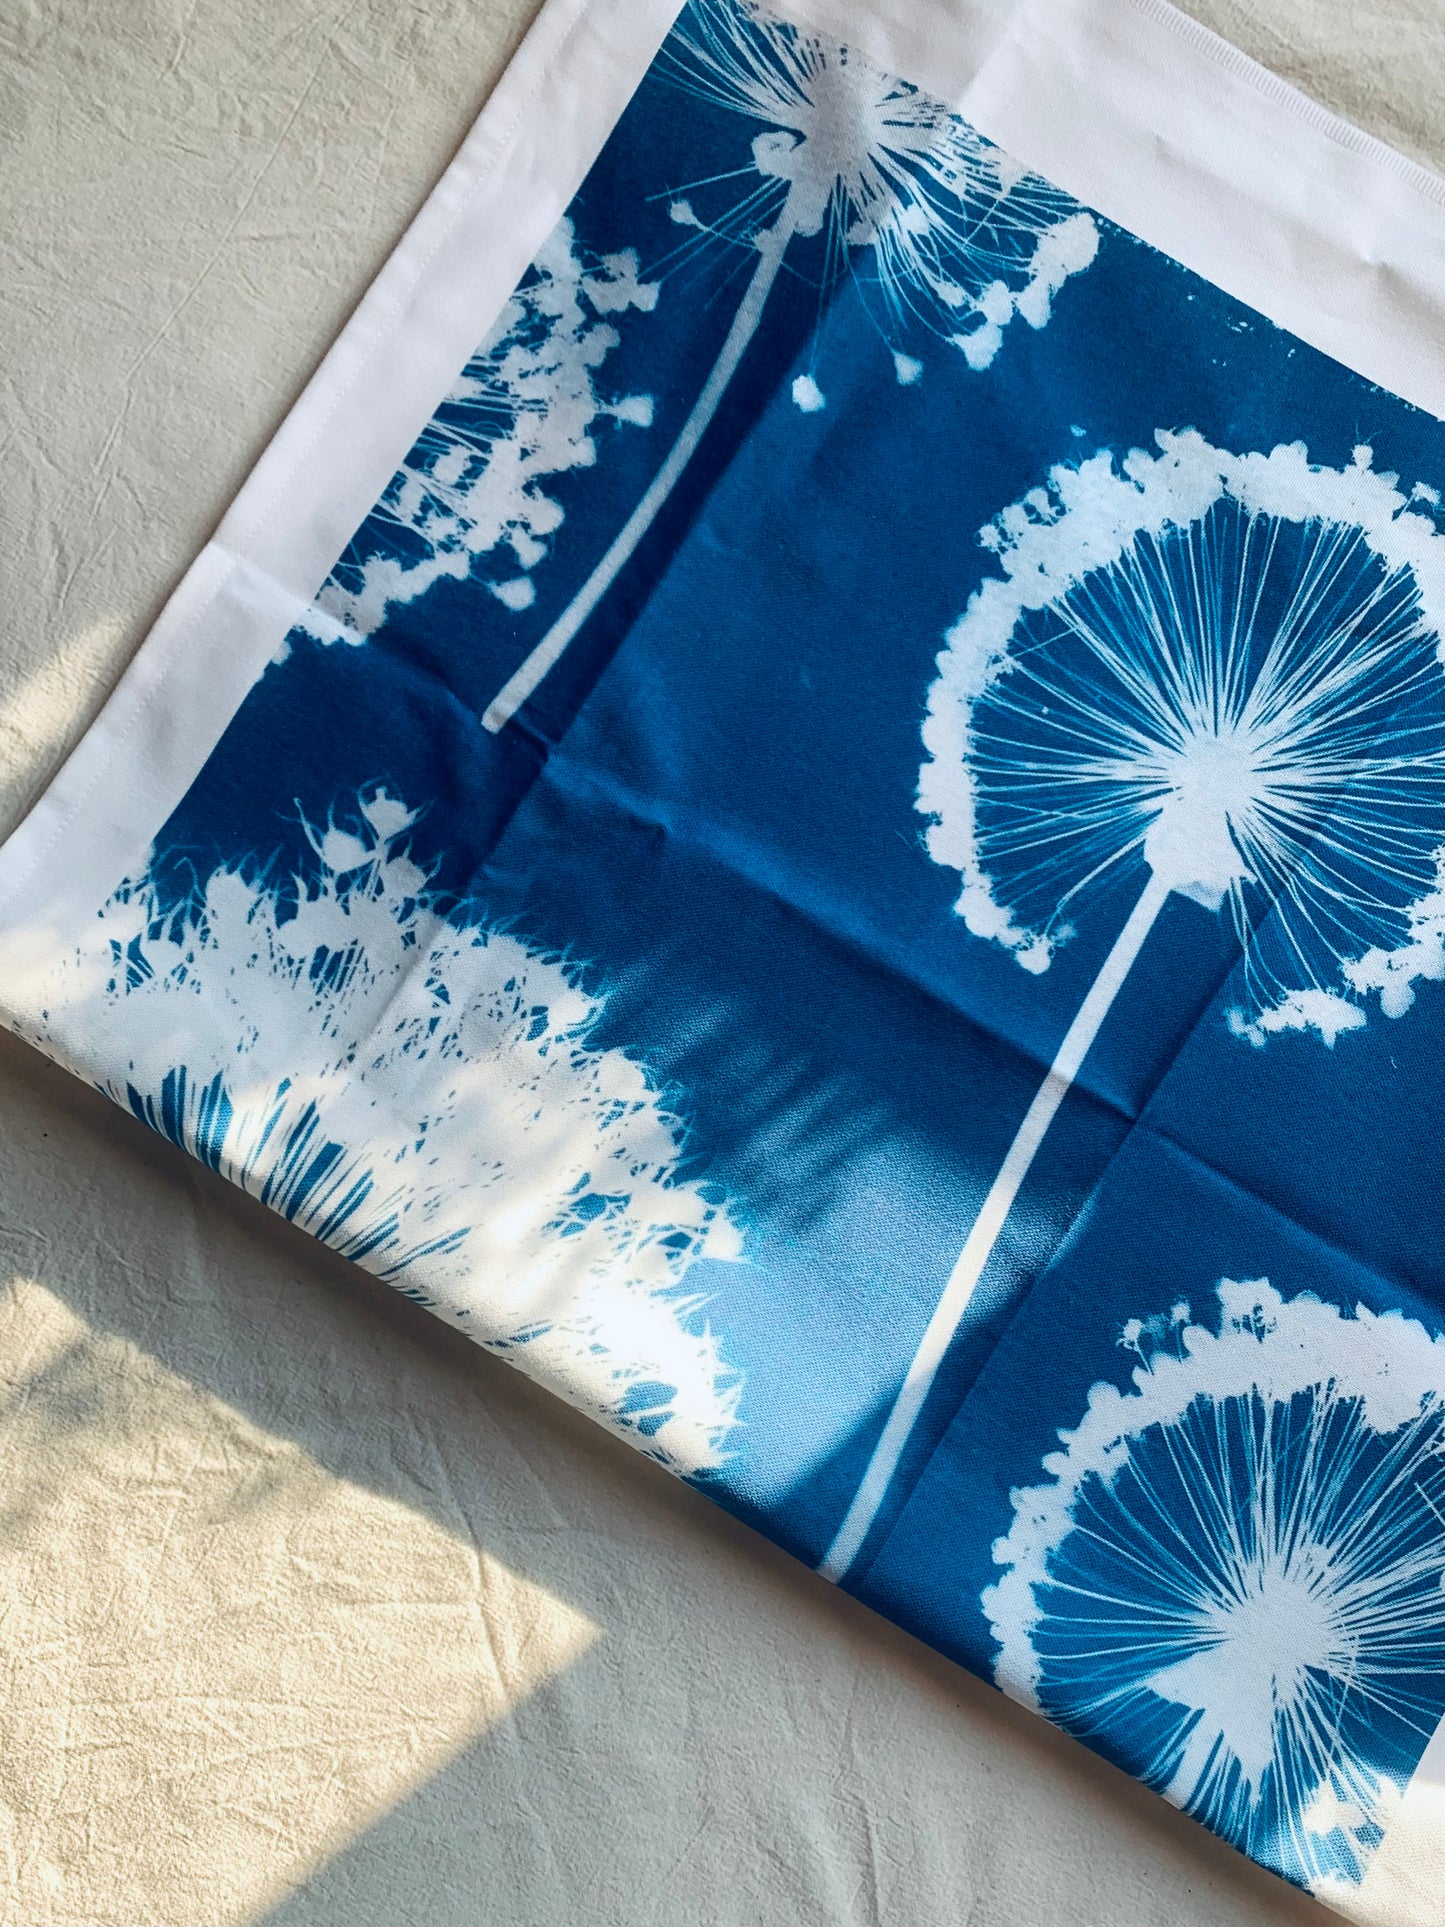 Allium Wallpaper - Cyanotype - Tea Towel